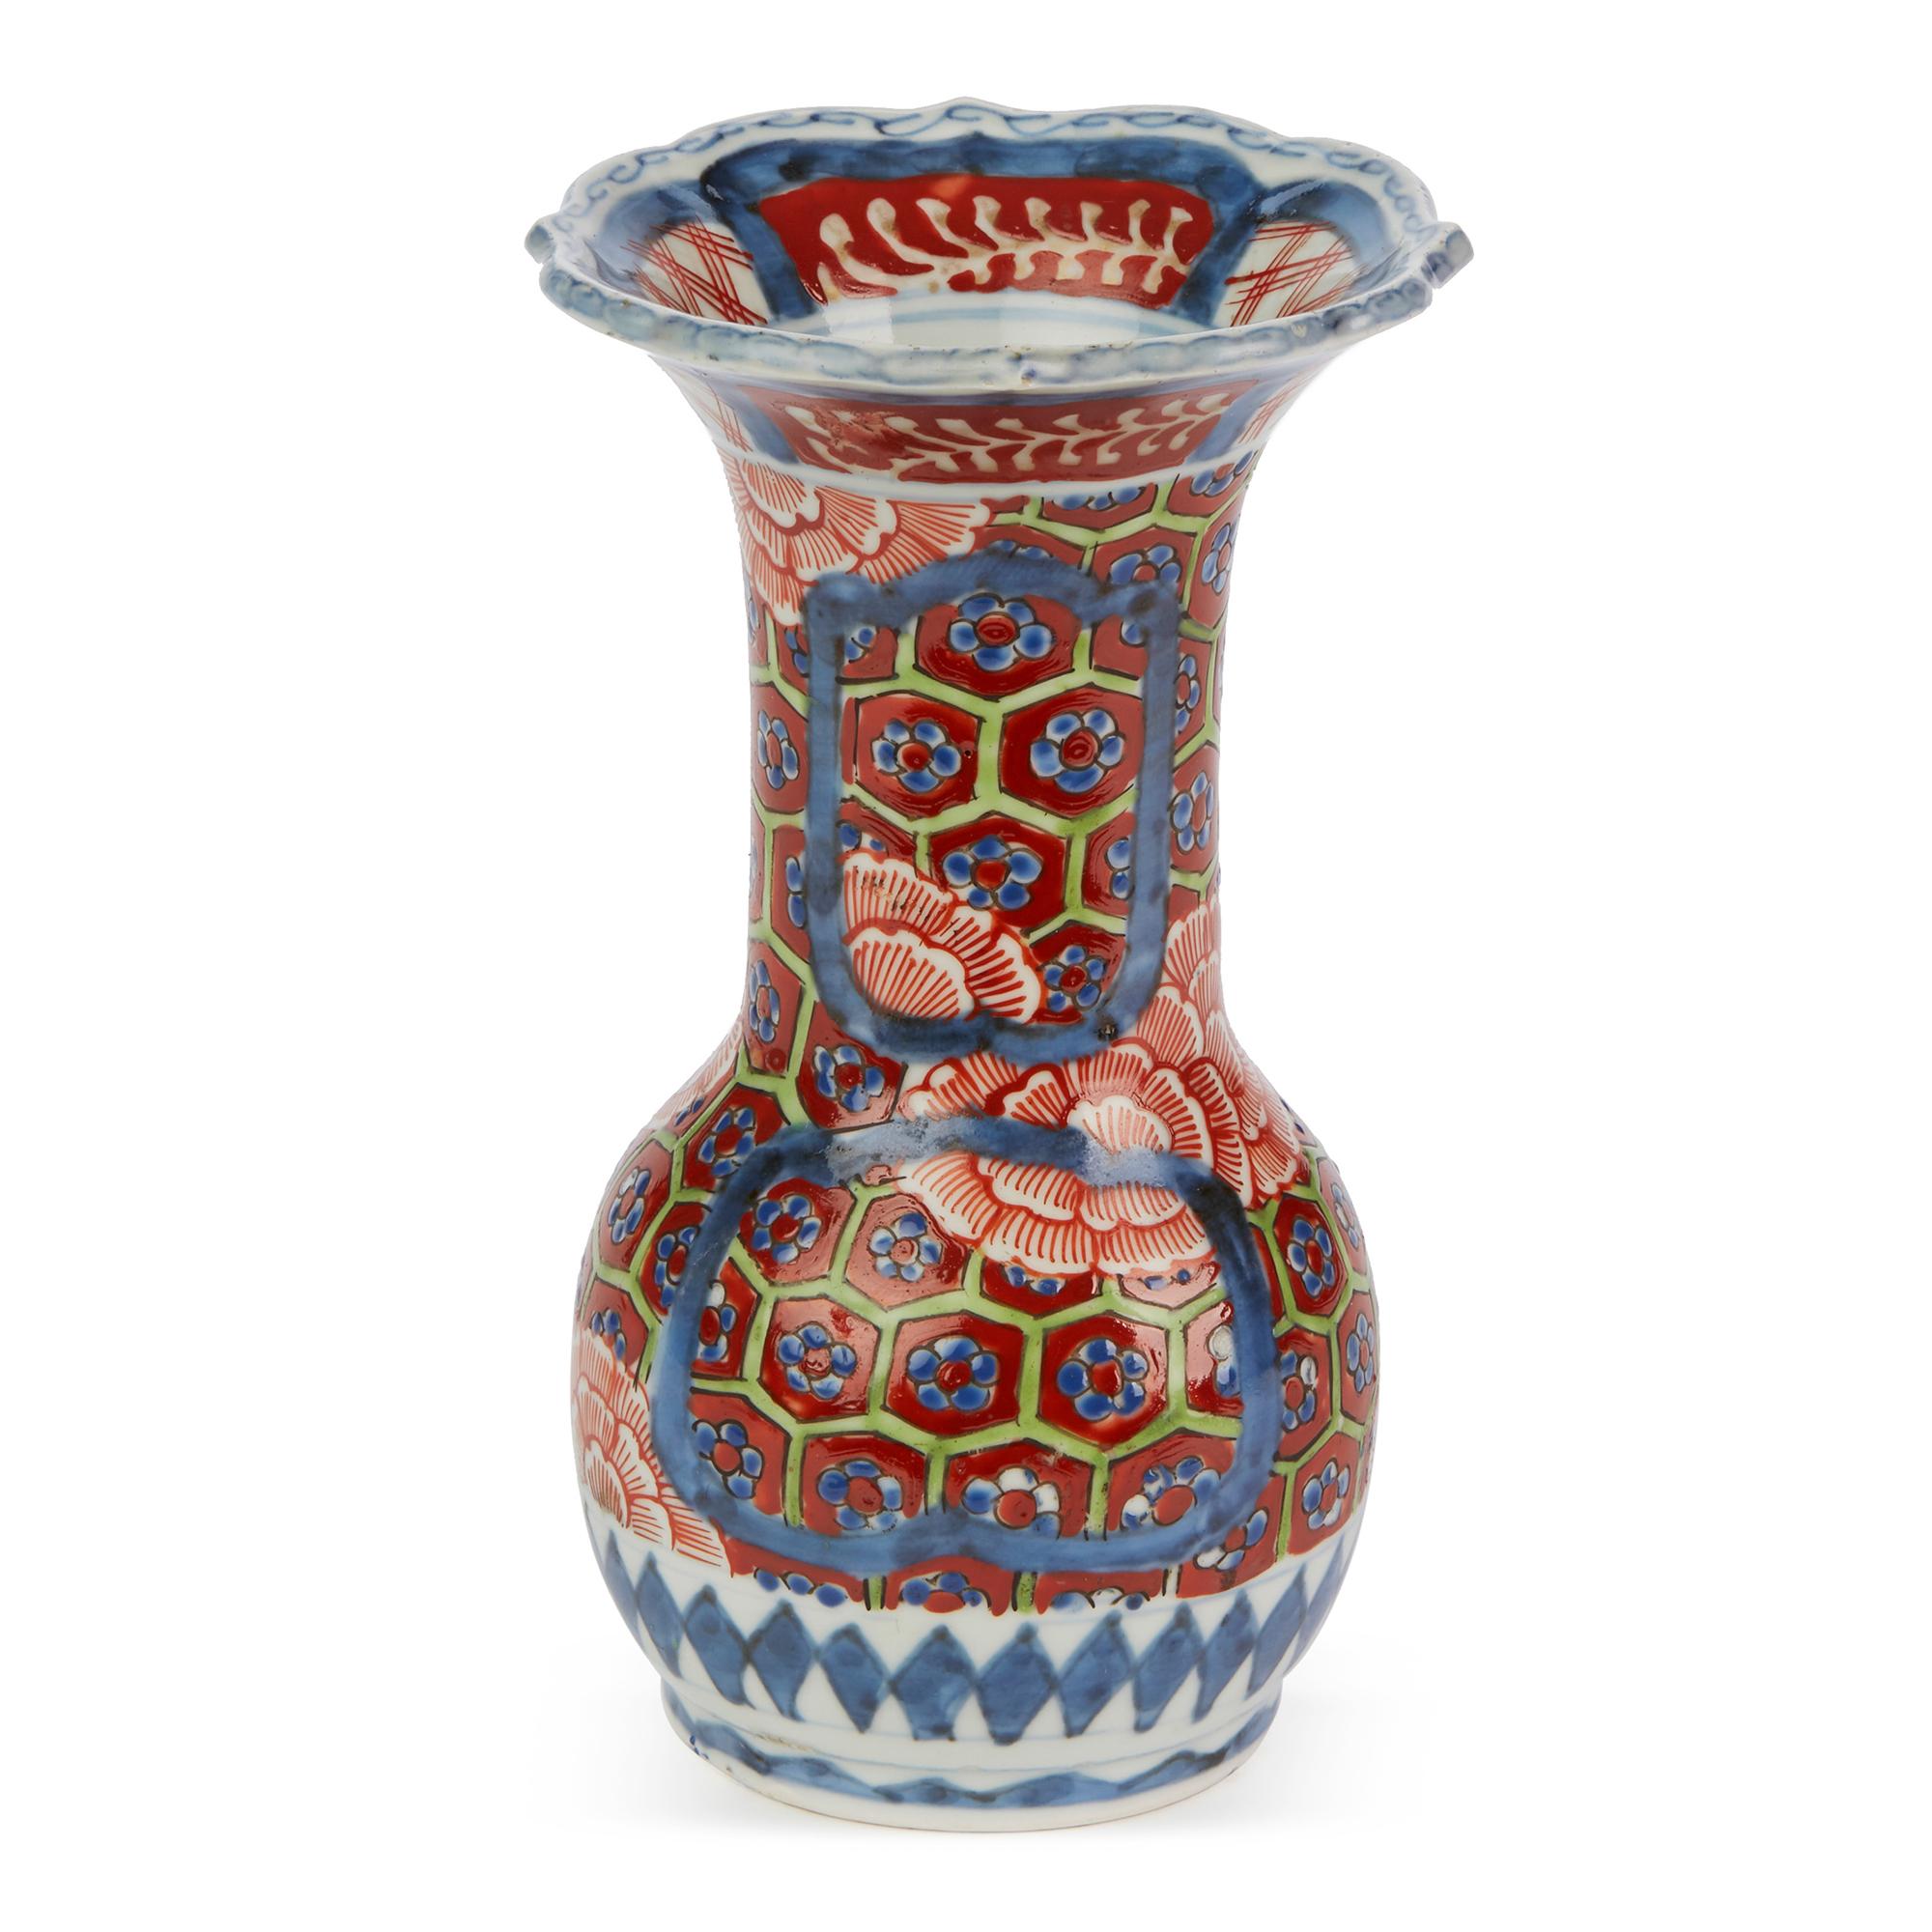 Japonisme Japanese Early Meiji Imari Decorated Porcelain Vase, 19th Century